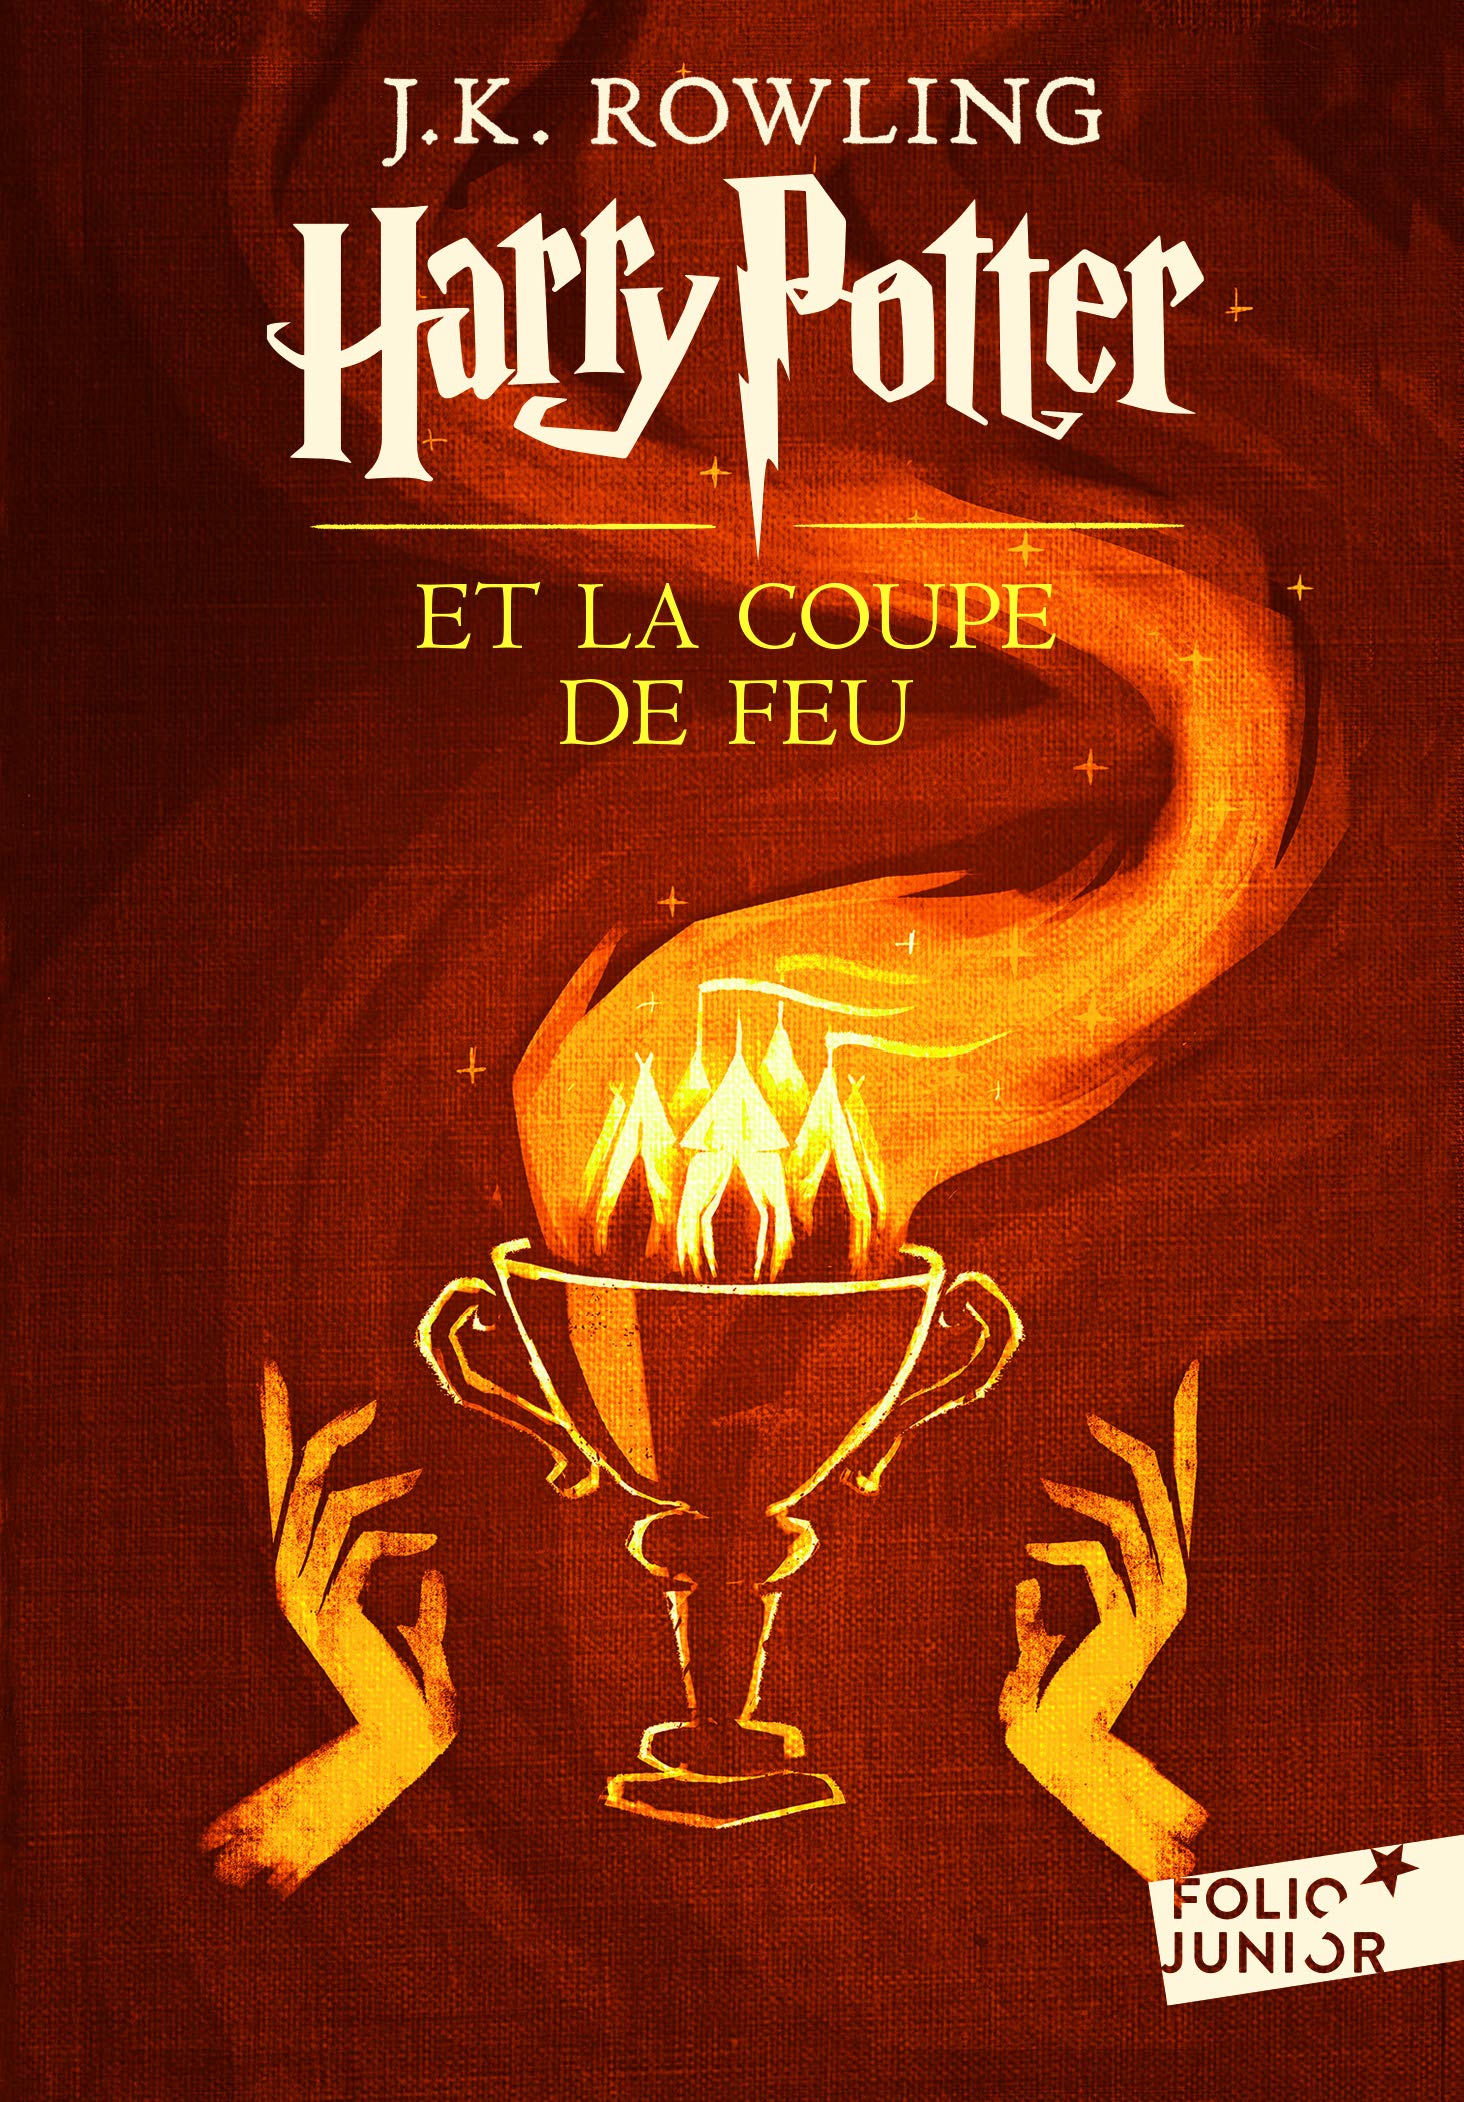 Harry Potter, IV : Harry Potter et la Coupe de Feu